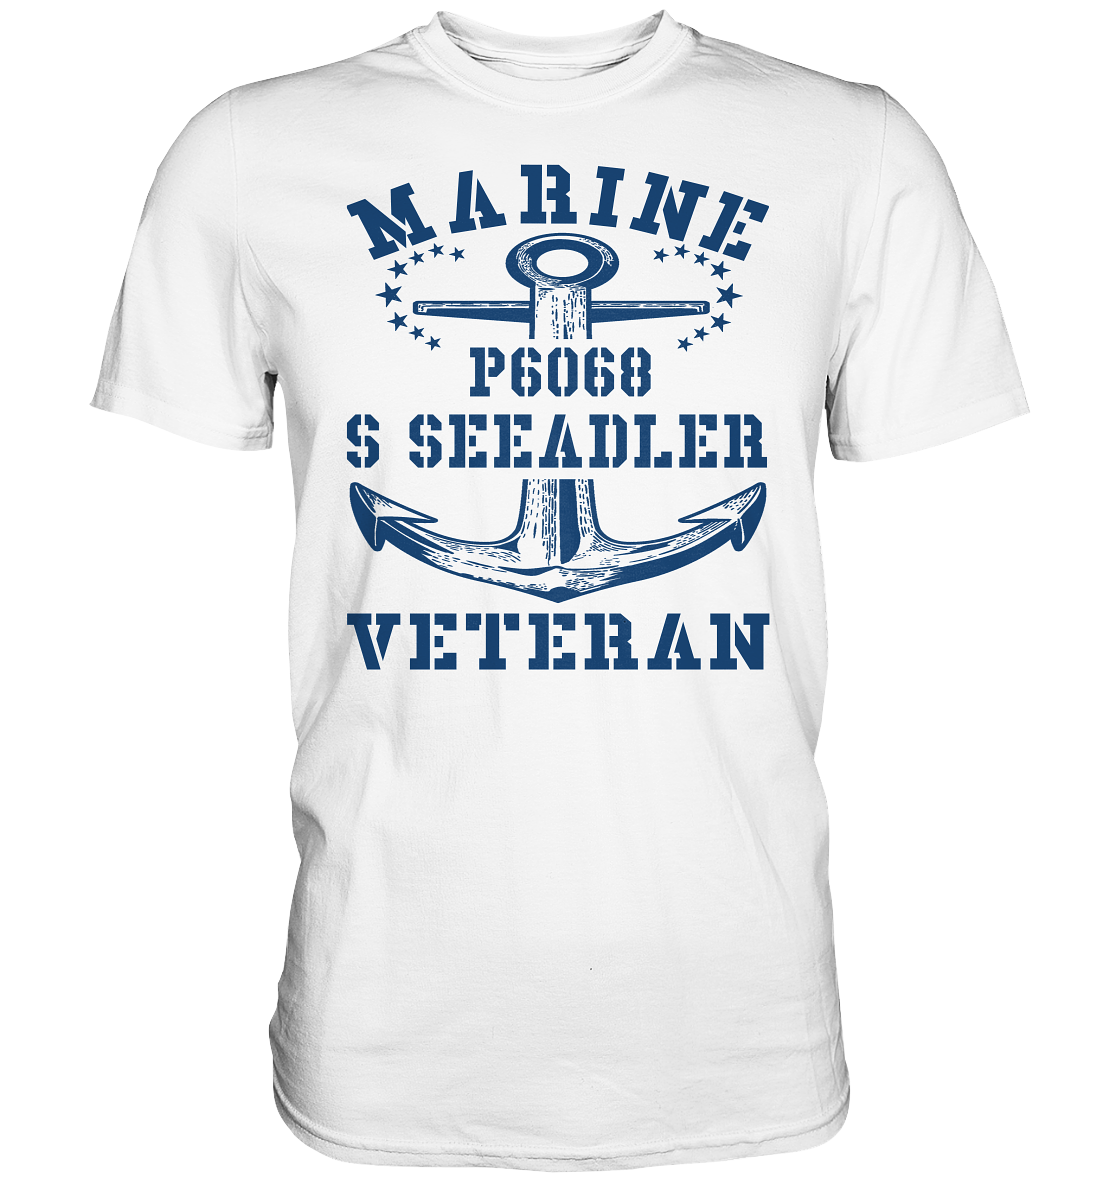 P6068 S SEEADLER Marine Veteran - Premium Shirt